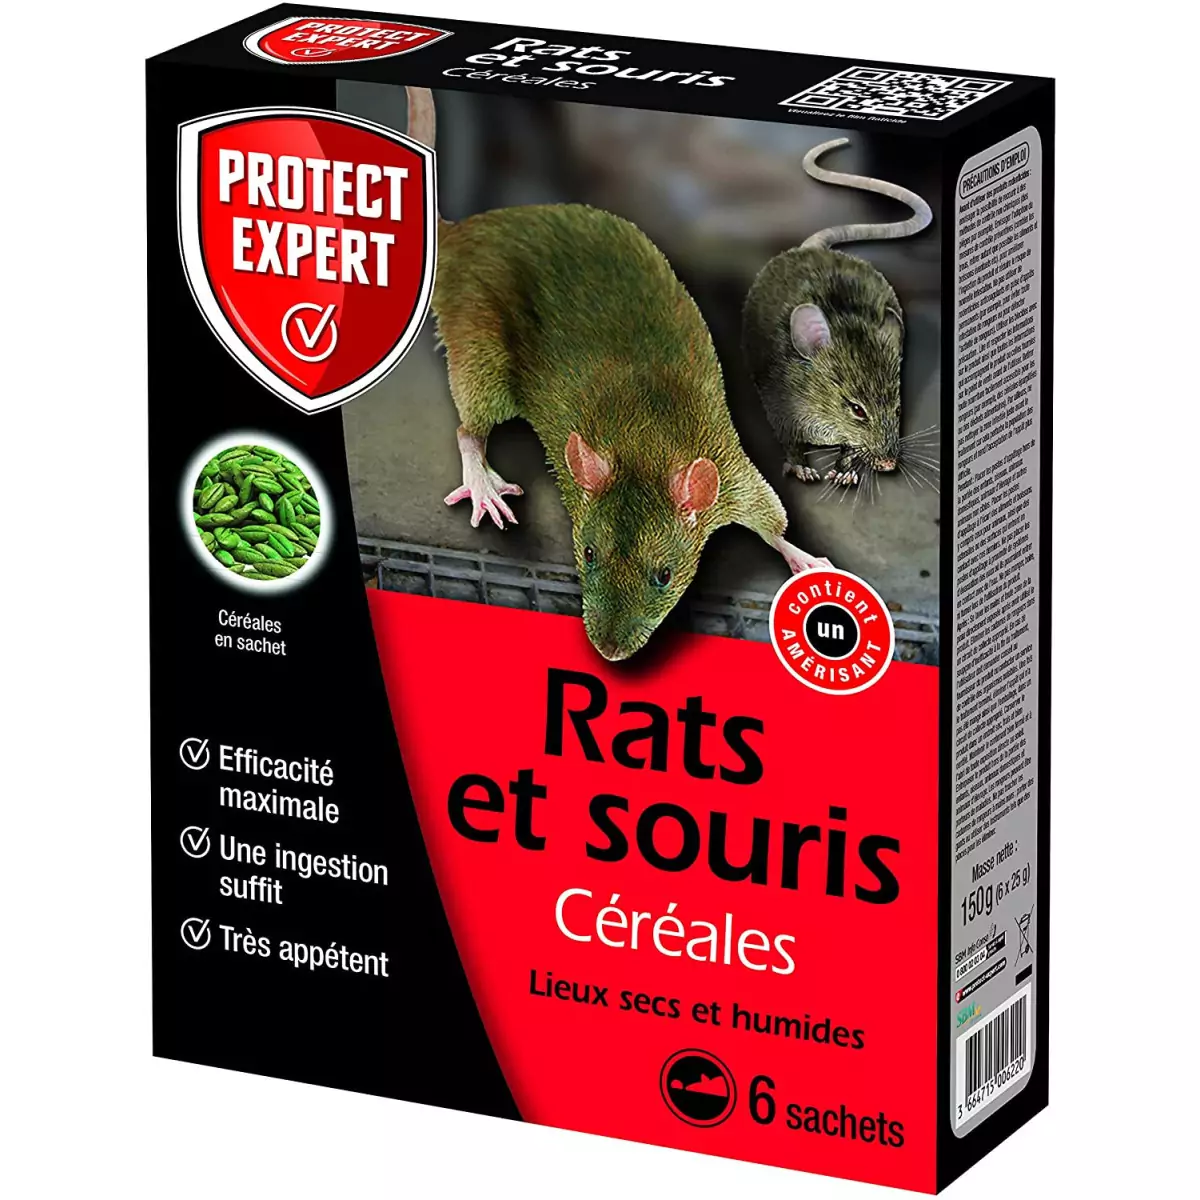 Achetez Recozit Des Appâts Pour L'Alimentation Des Rats Et Souris (10x15g)